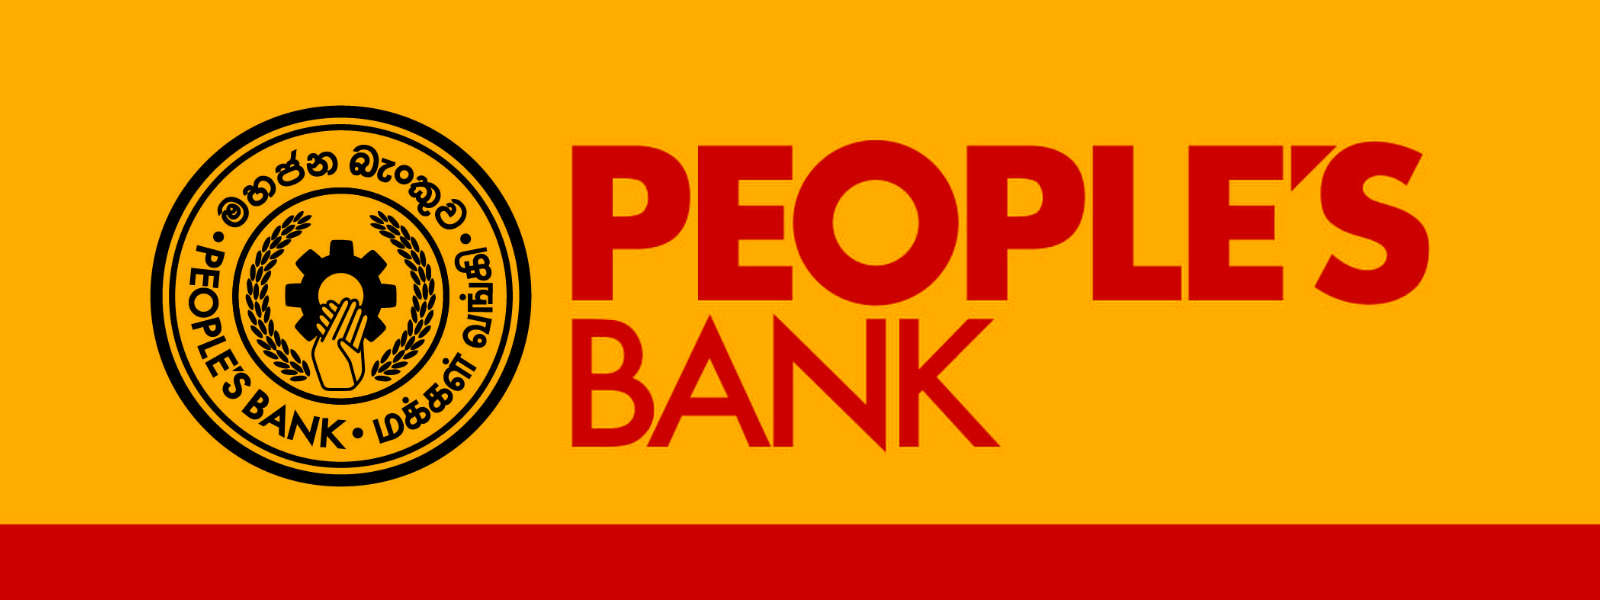 People's Bank grants 10bn loan for board member